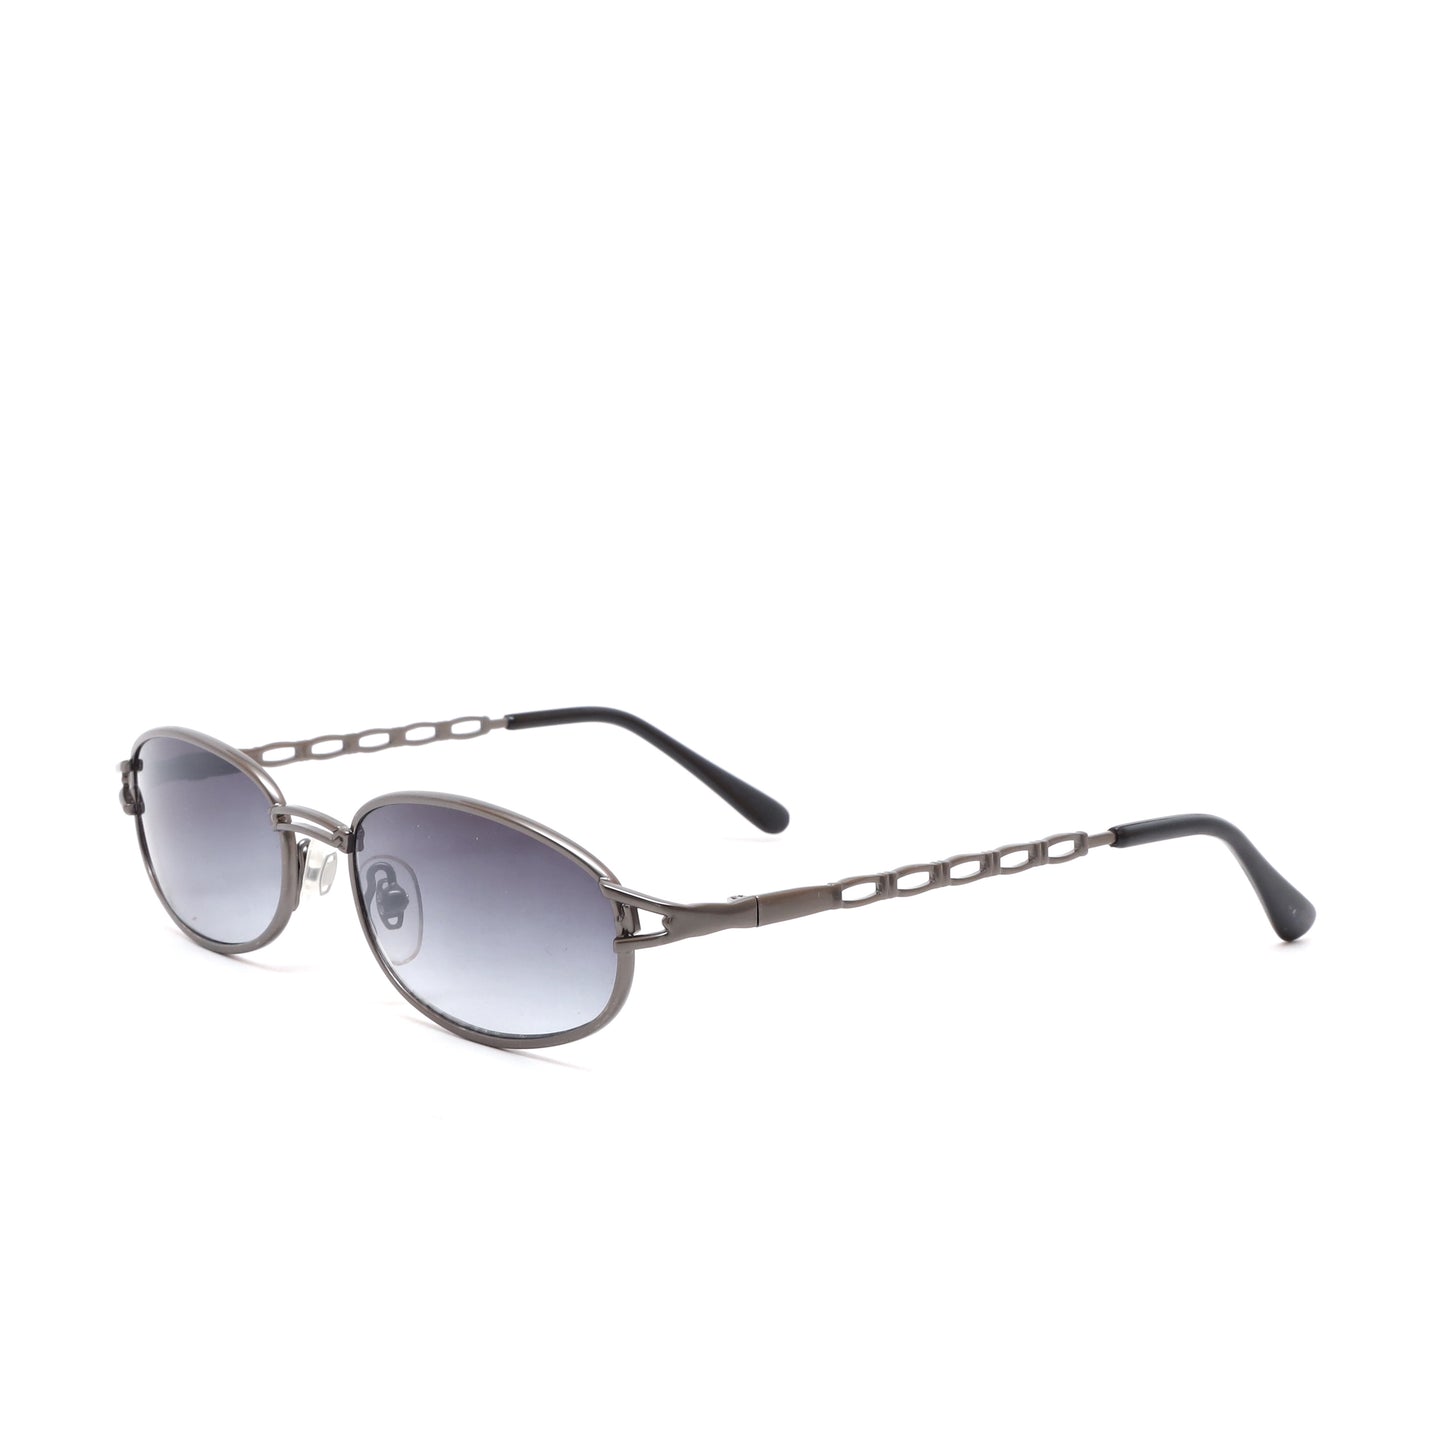 Vintage MINI Small Size 1997 Neo Matrix Style Wire Frame Sunglasses - Silver